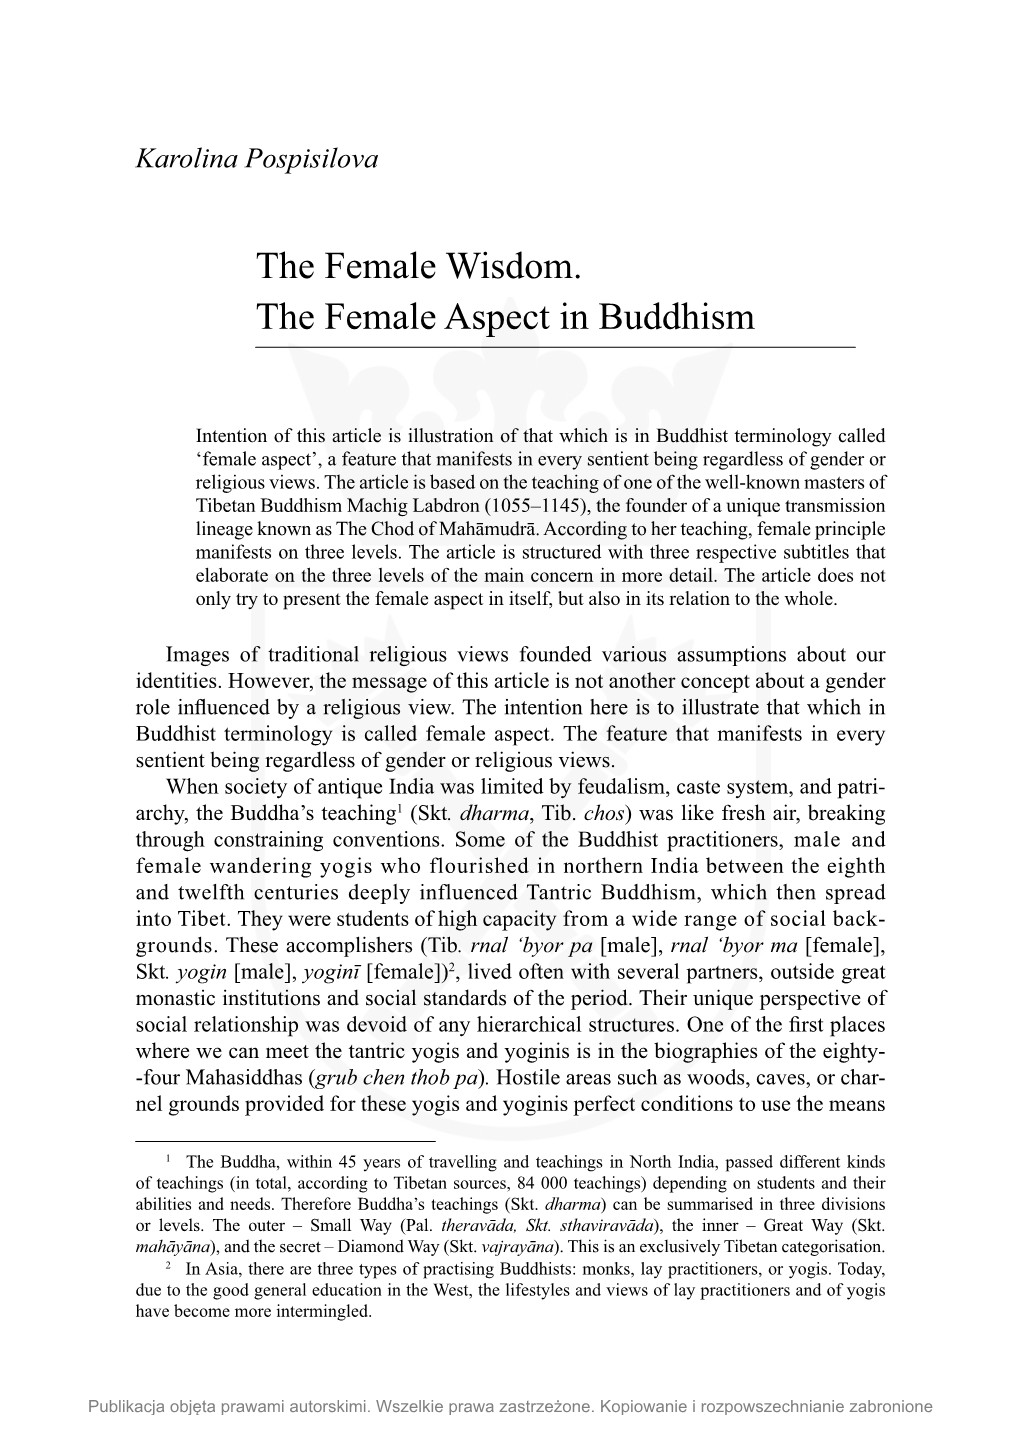 The Female Wisdom. the Female Aspect in Buddhism